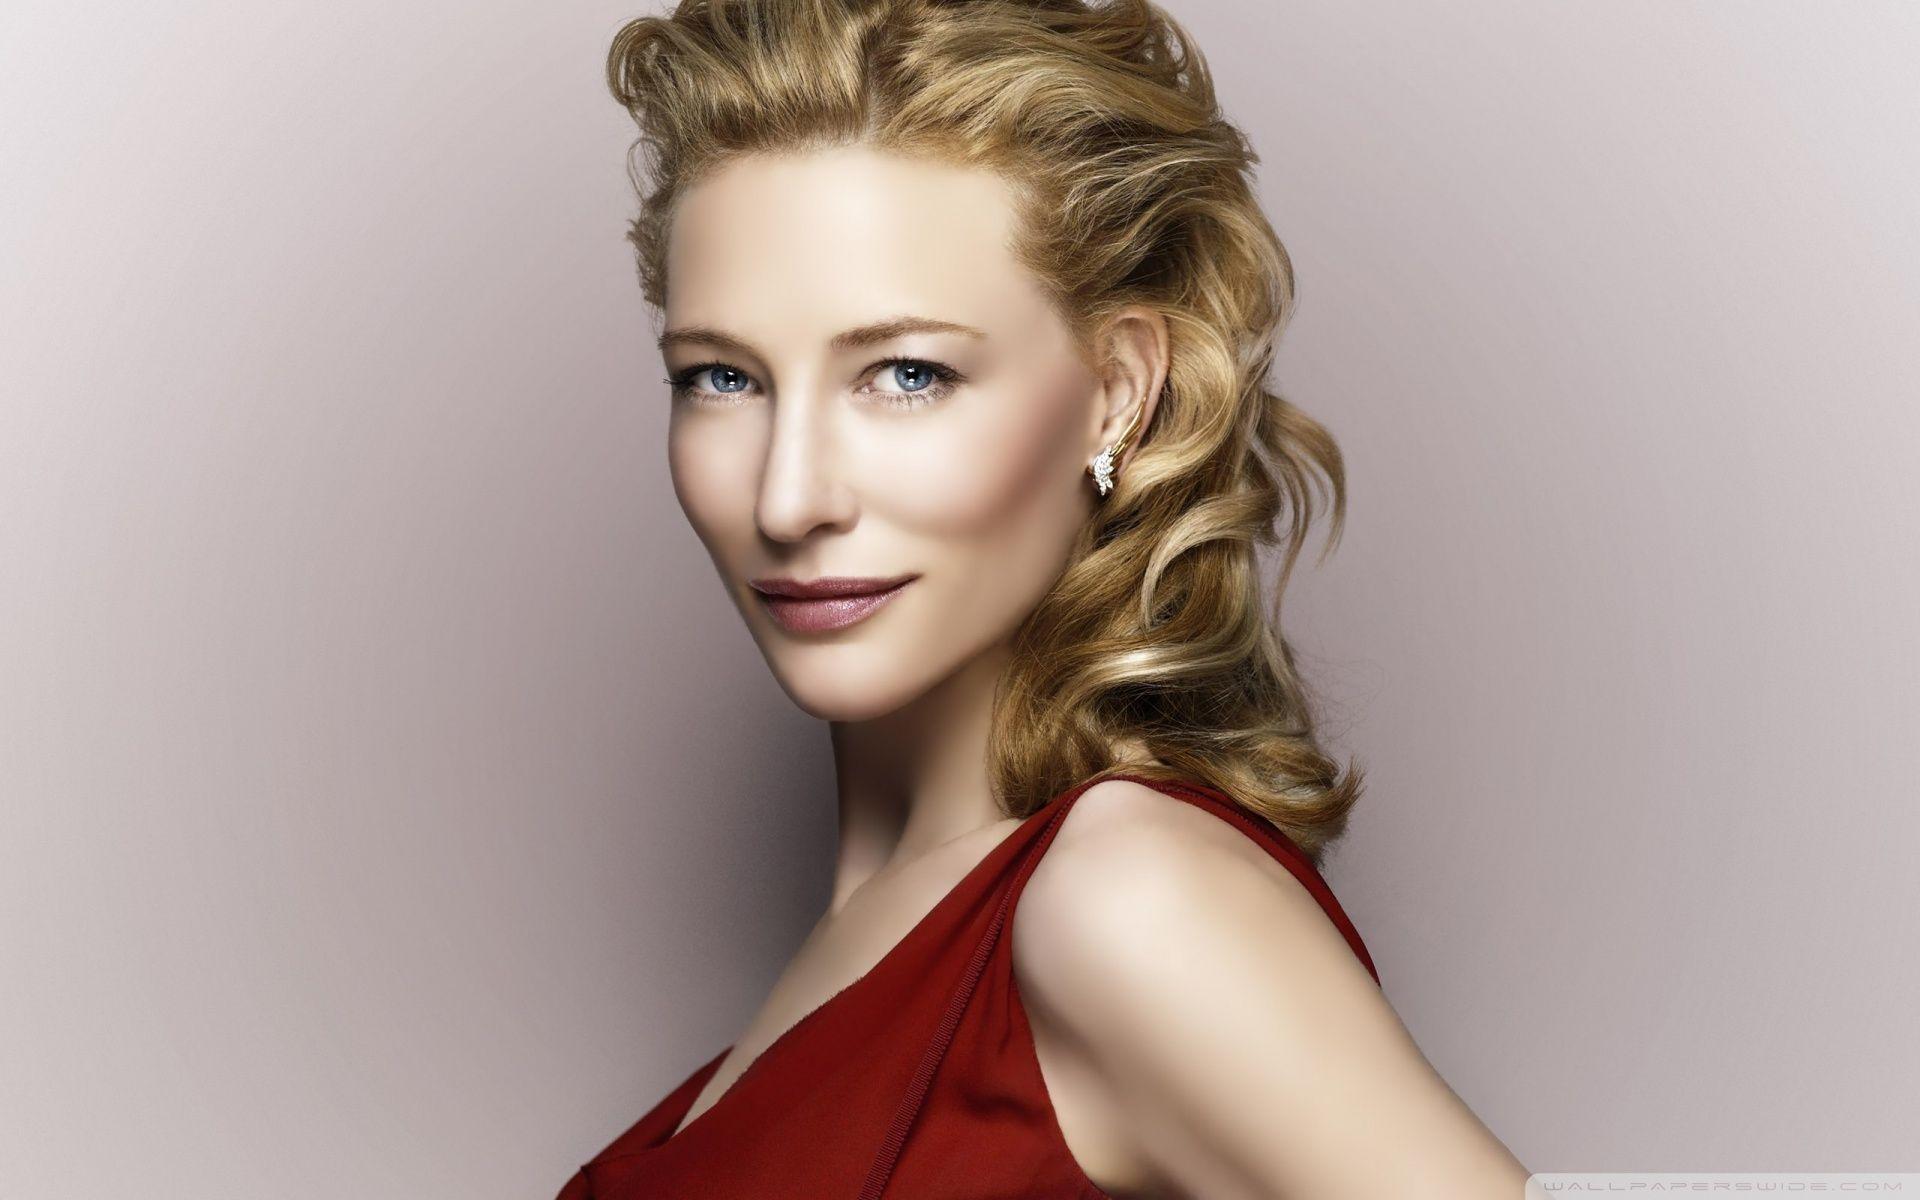 Cate Blanchett 2012 HD desktop wallpaper, High Definition